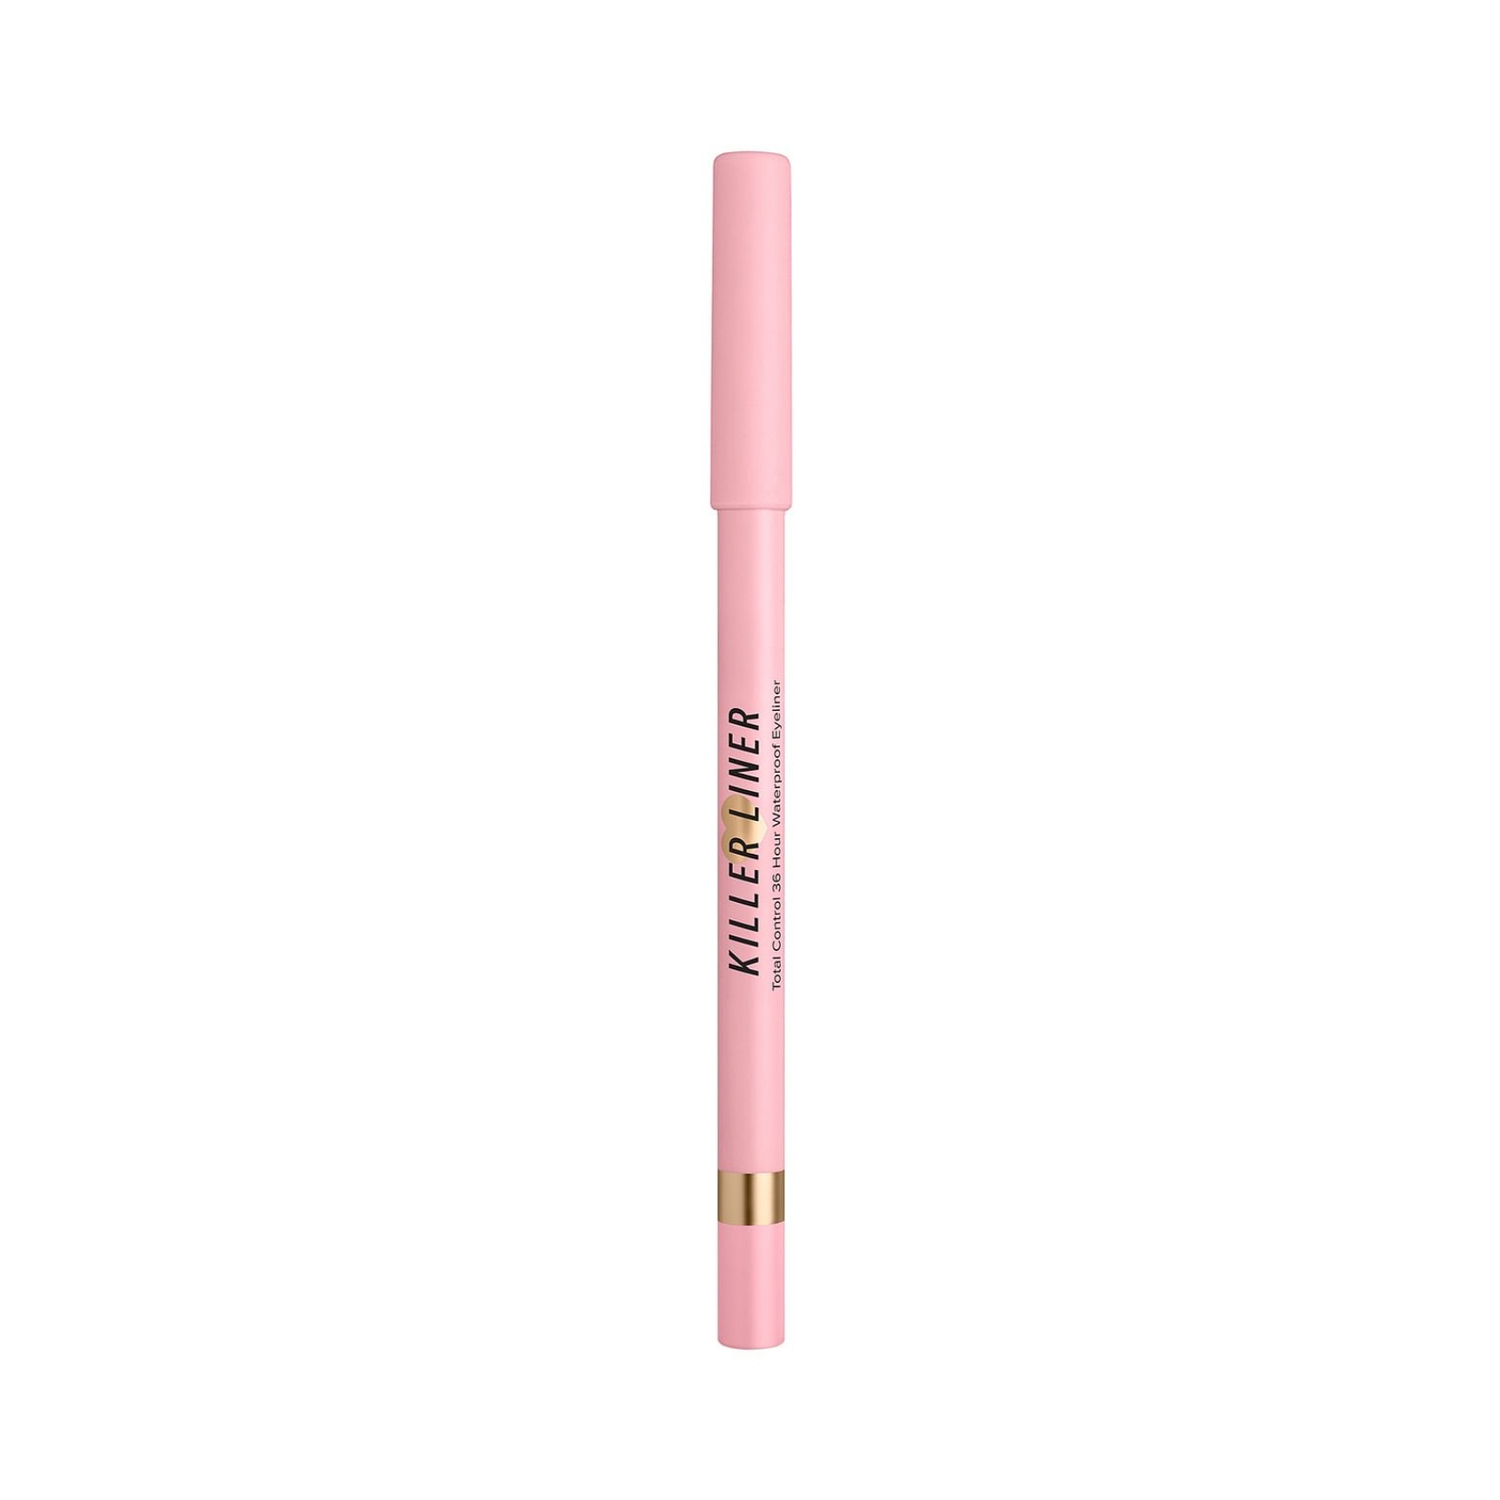 Too Faced | Too Faced 36 Hour Killer Gel Eyeliner Pencil - Pink (1.1g)